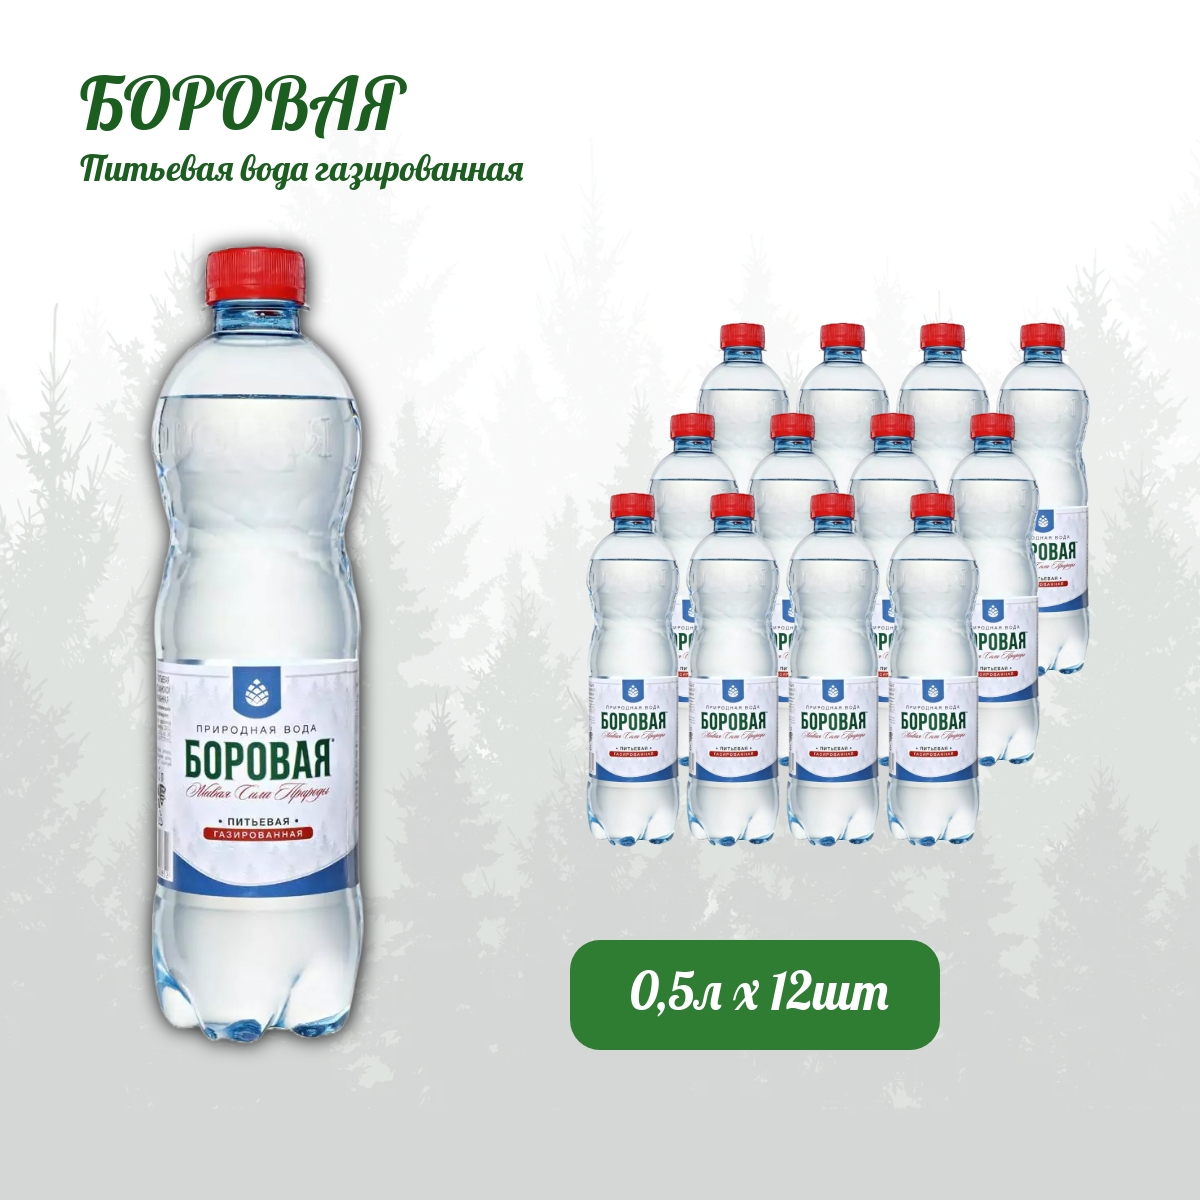 Вода питьевая Borovaya природная газированная, 0,5 л х 12 шт